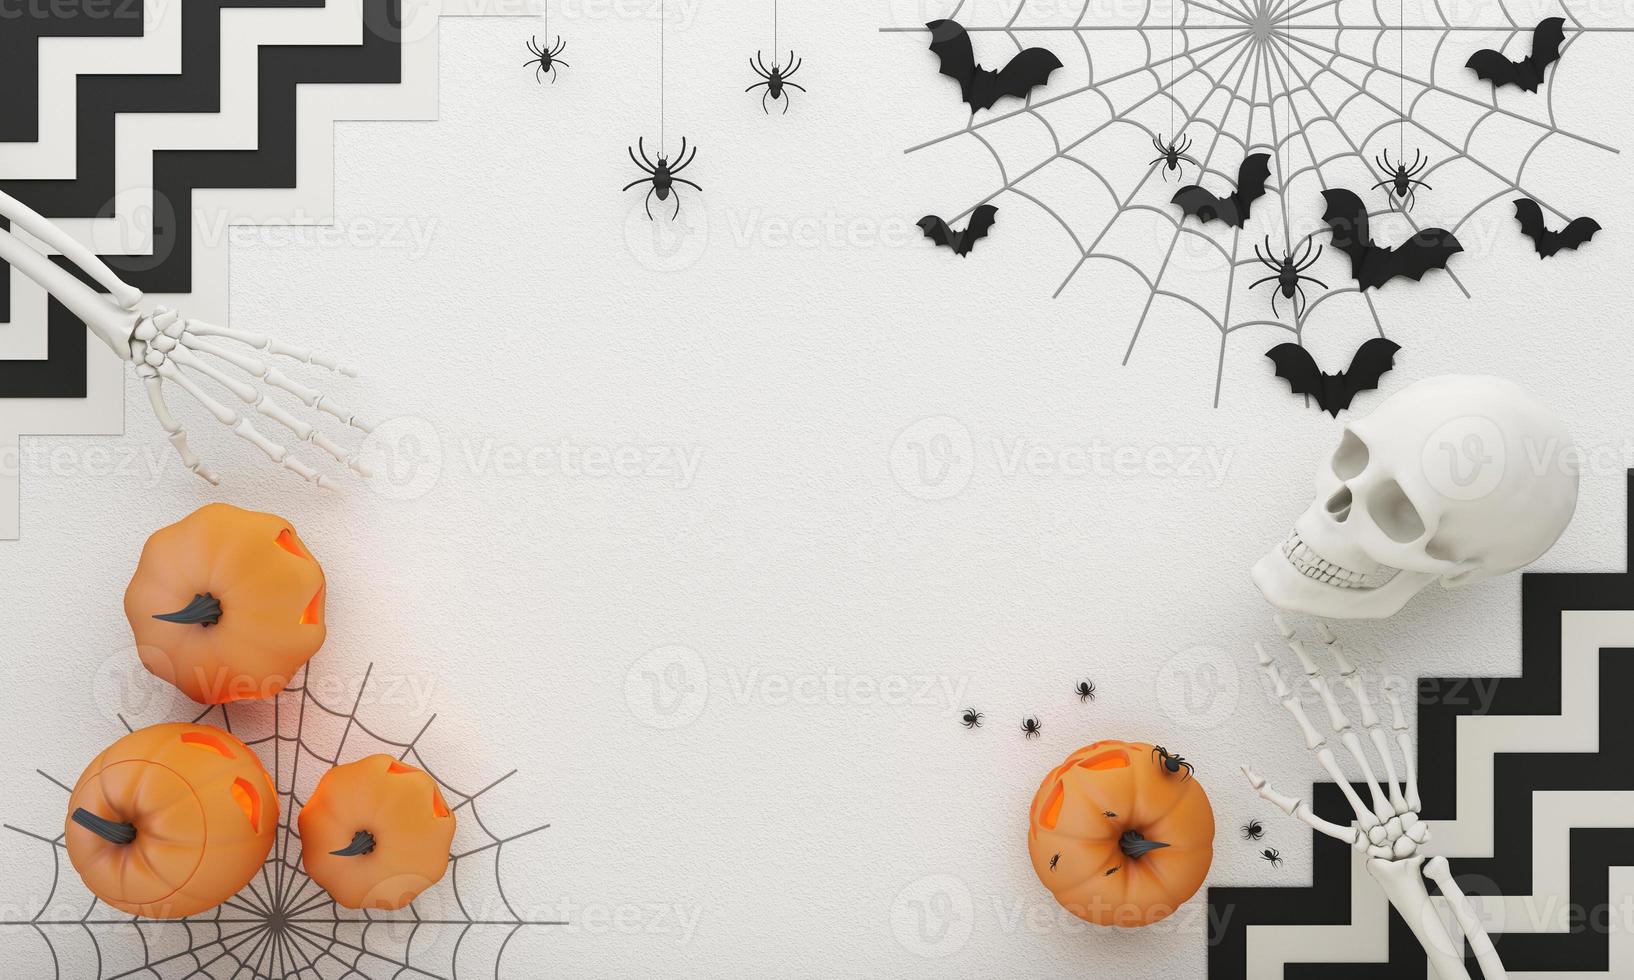 affiches de fête d'halloween heureux avec chauve-souris en toile d'araignée avec des citrouilles en illustration de dessin animé. pleine lune et fantôme boo avec main humaine et squelette de tête. fond de vue de dessus de texture béton. rendu 3d photo